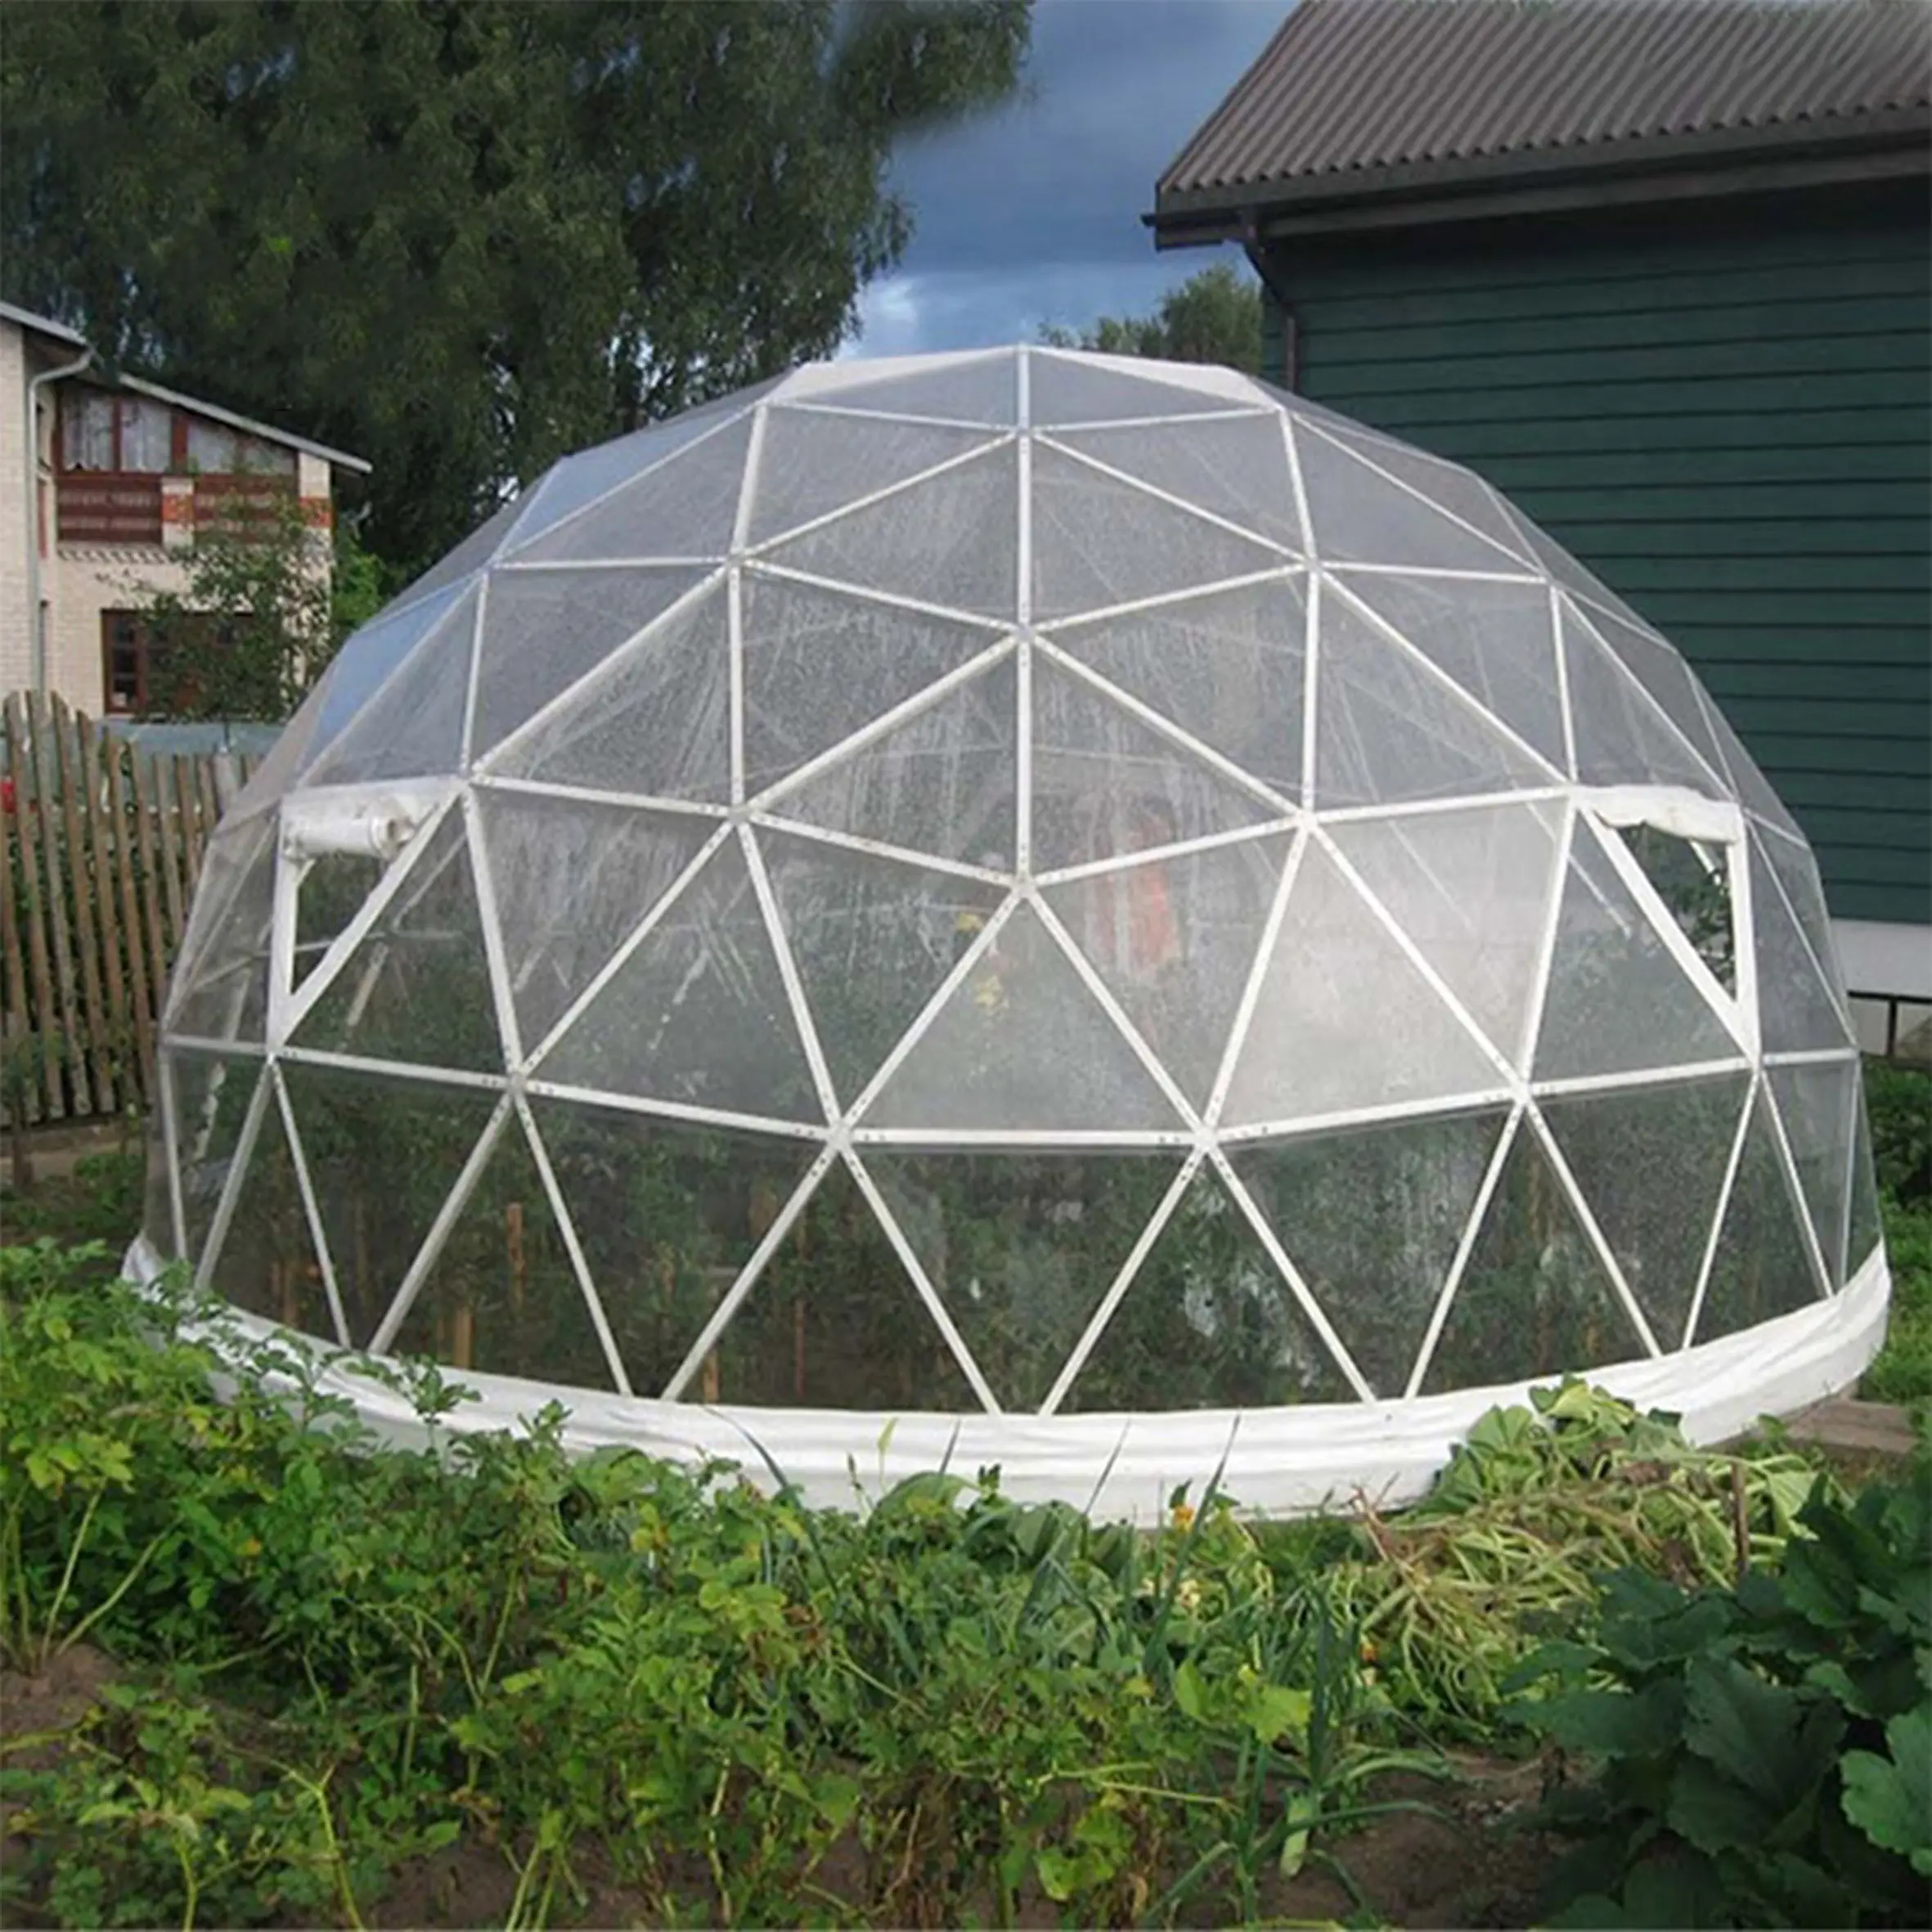 Stargazing円形キャノピーテント完全透明温室球形インフレータブルドーム、ホテル用/